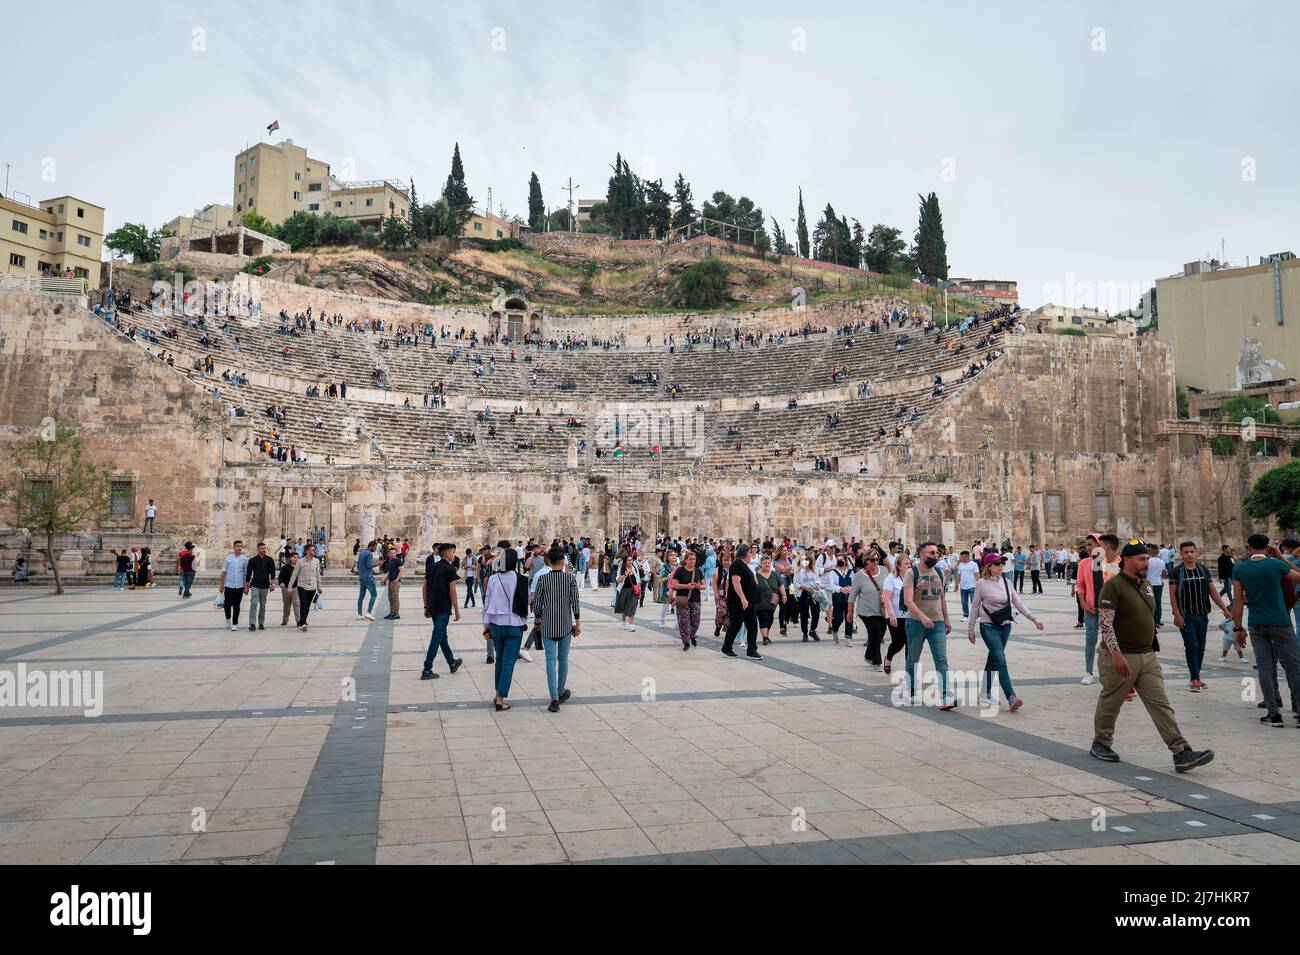 Amman, Jordanien - 2. Mai 2022: Menschen versammeln sich in der Innenstadt von Amman vor einem alten römischen Theatergebäude, um den muslimischen Feiertag Eid unter den Resi zu feiern Stockfoto